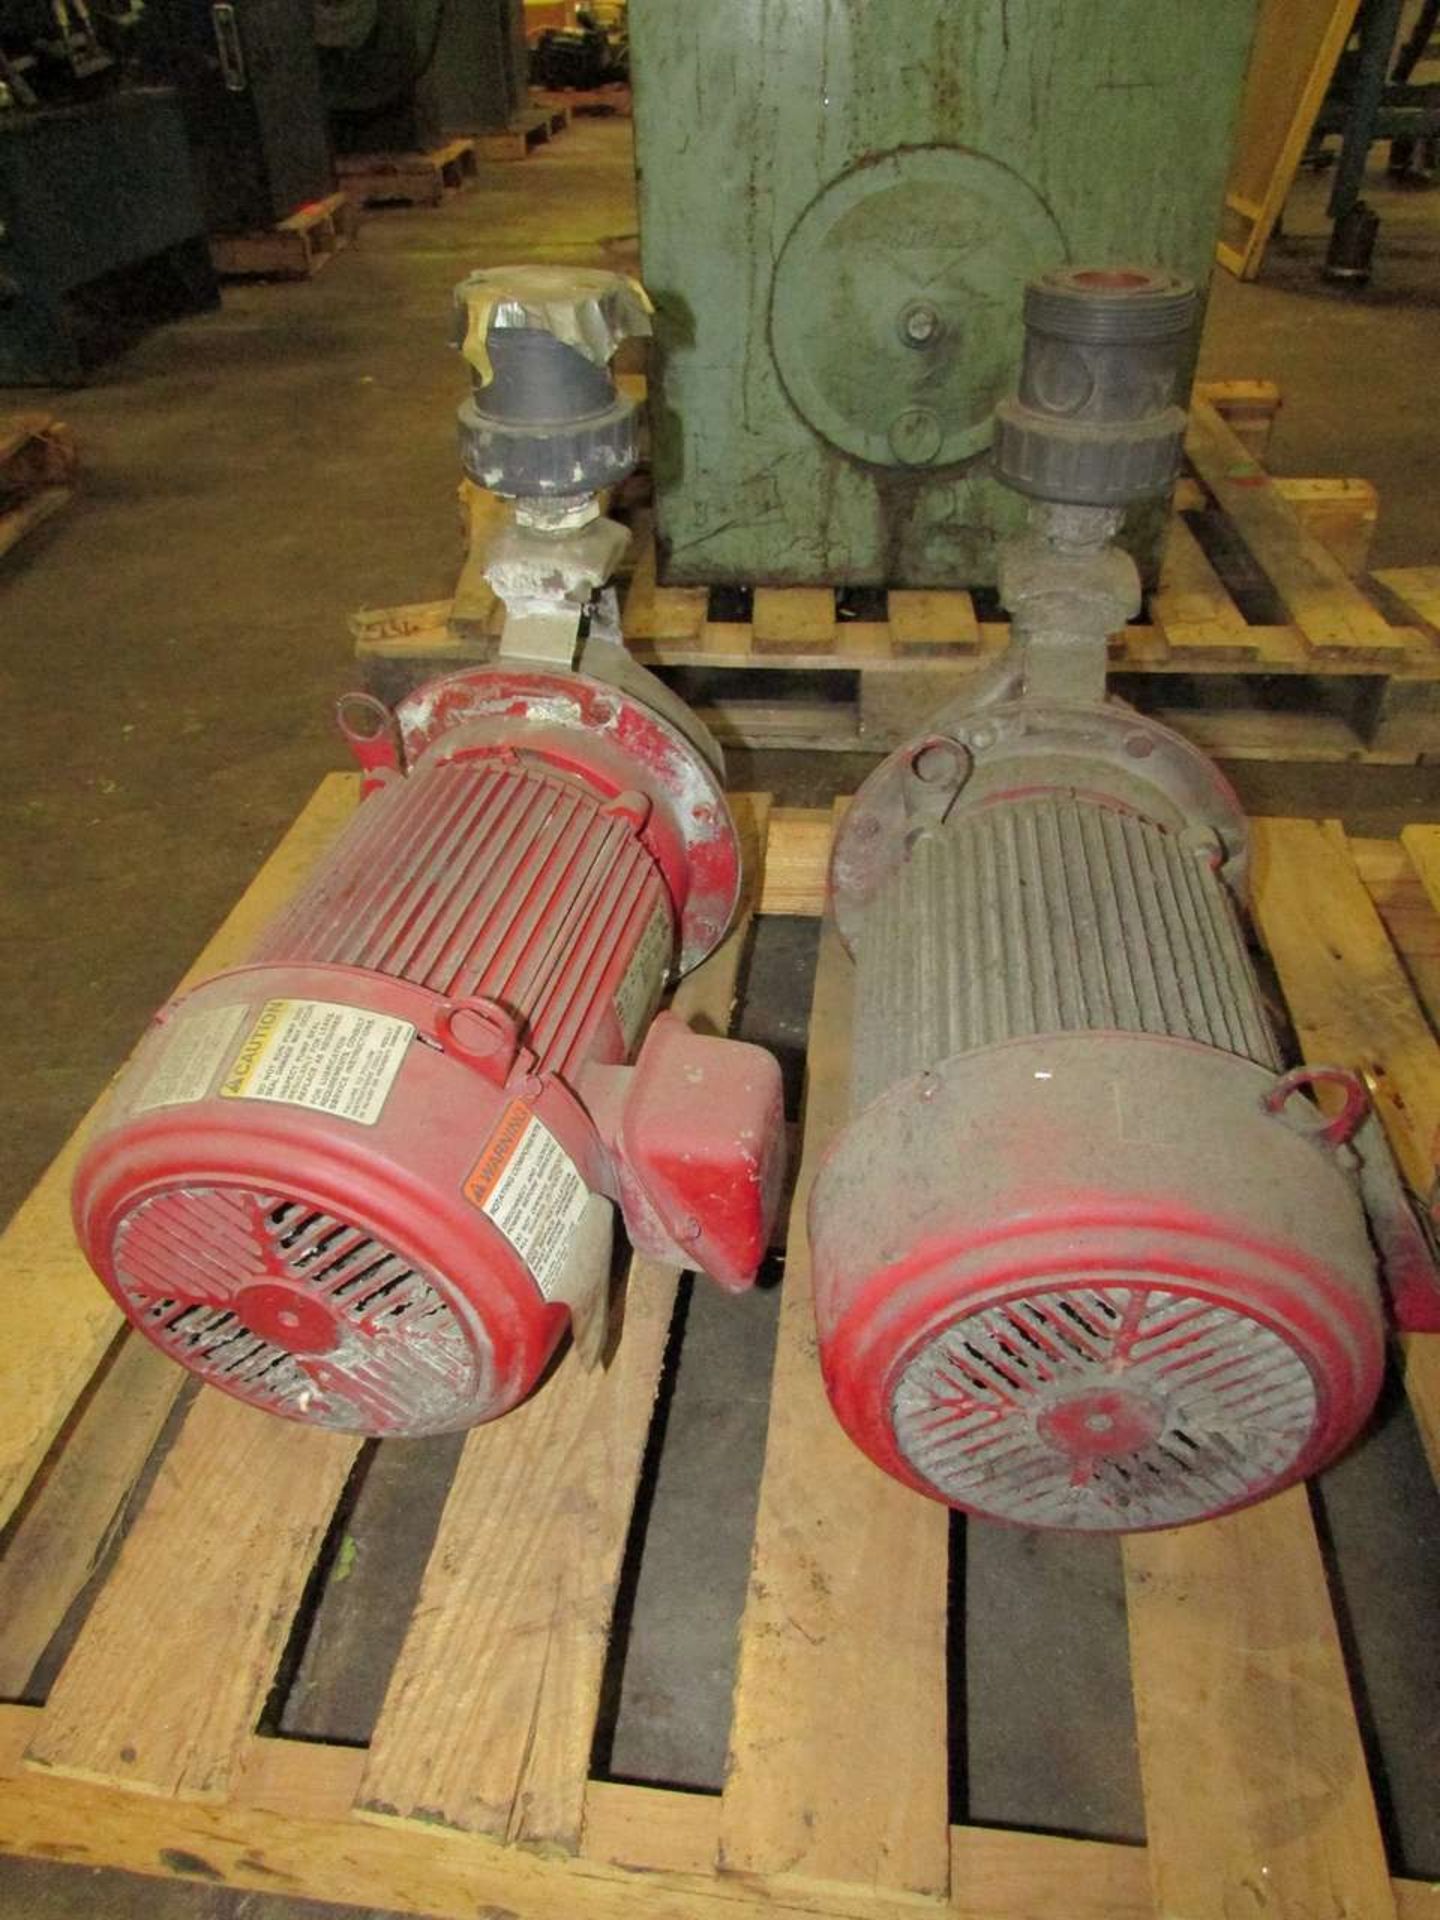 ITT Bell & Gossett 3531 7.5HP Centrifugal Pumps - Image 4 of 4